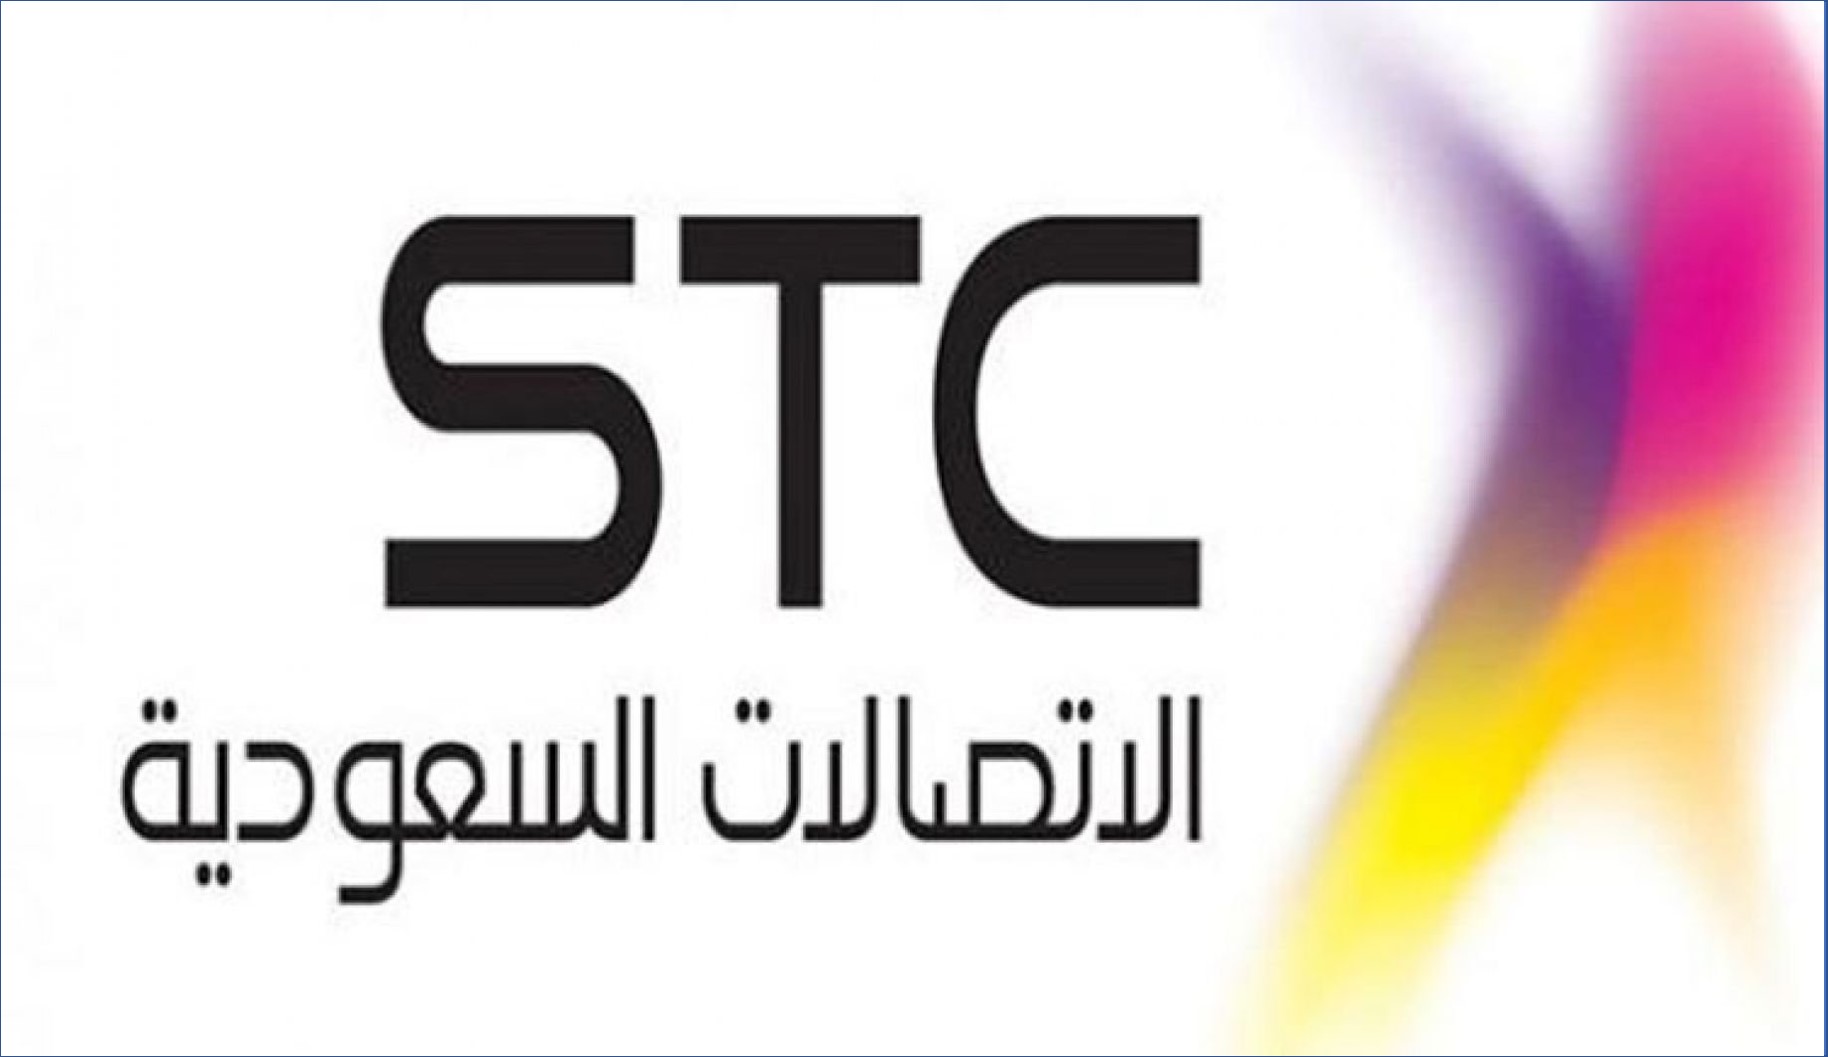 وظائف شركة الاتصالات السعودية STC مطلوب 48 موظف للرجال والنساء